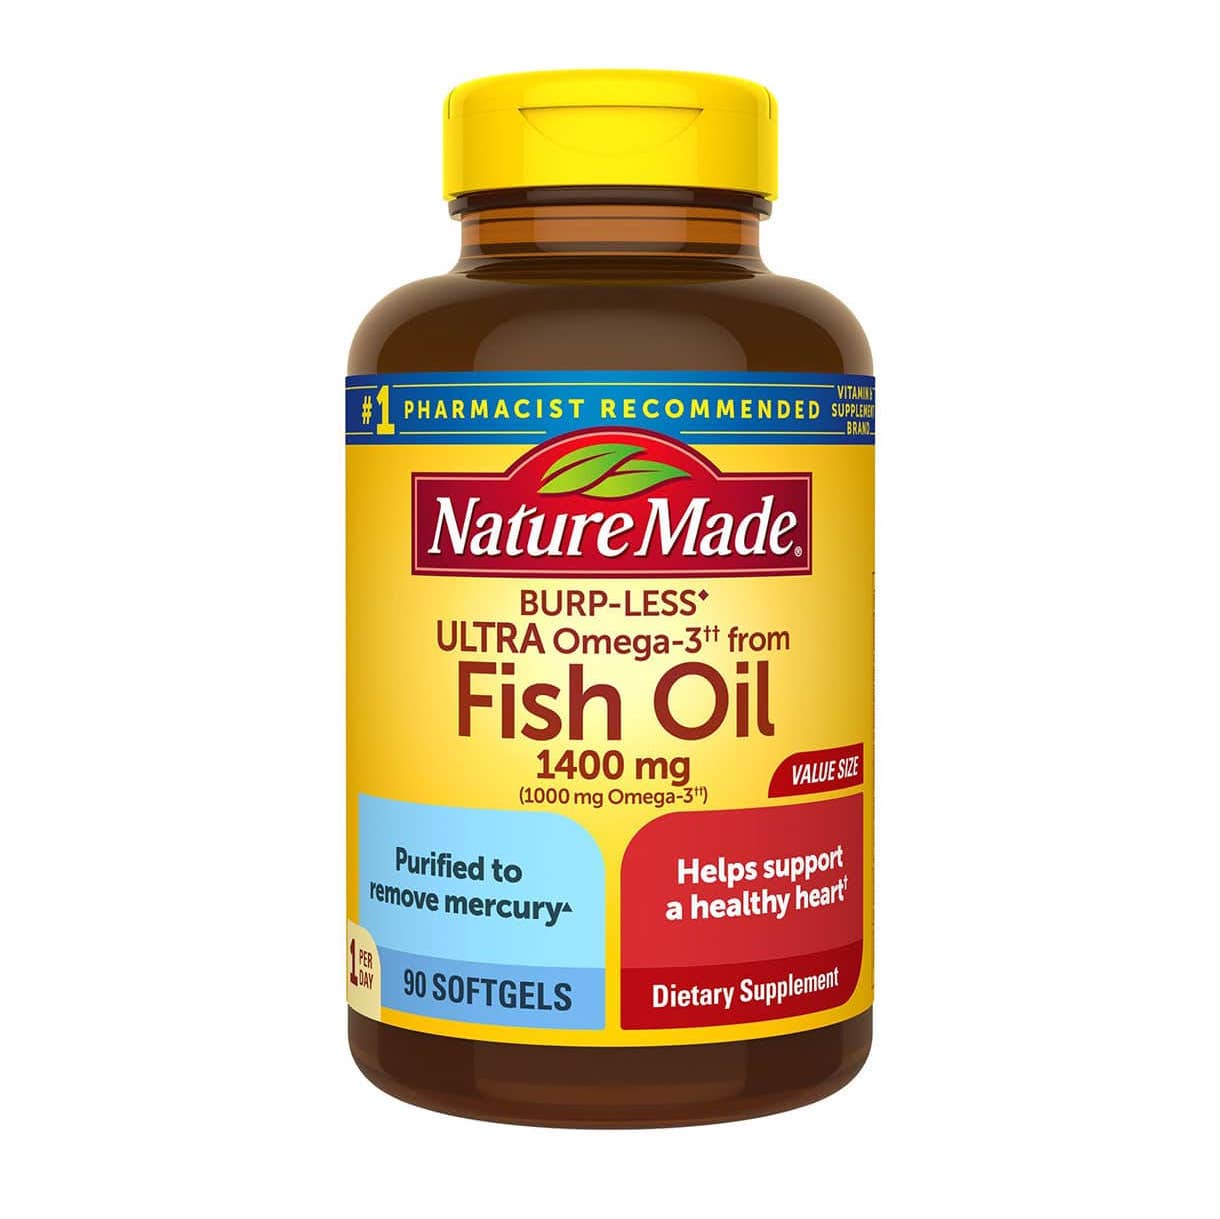 dau ca nature made fish oil 1400mg 1000mg omega 3 burp less khong tanh